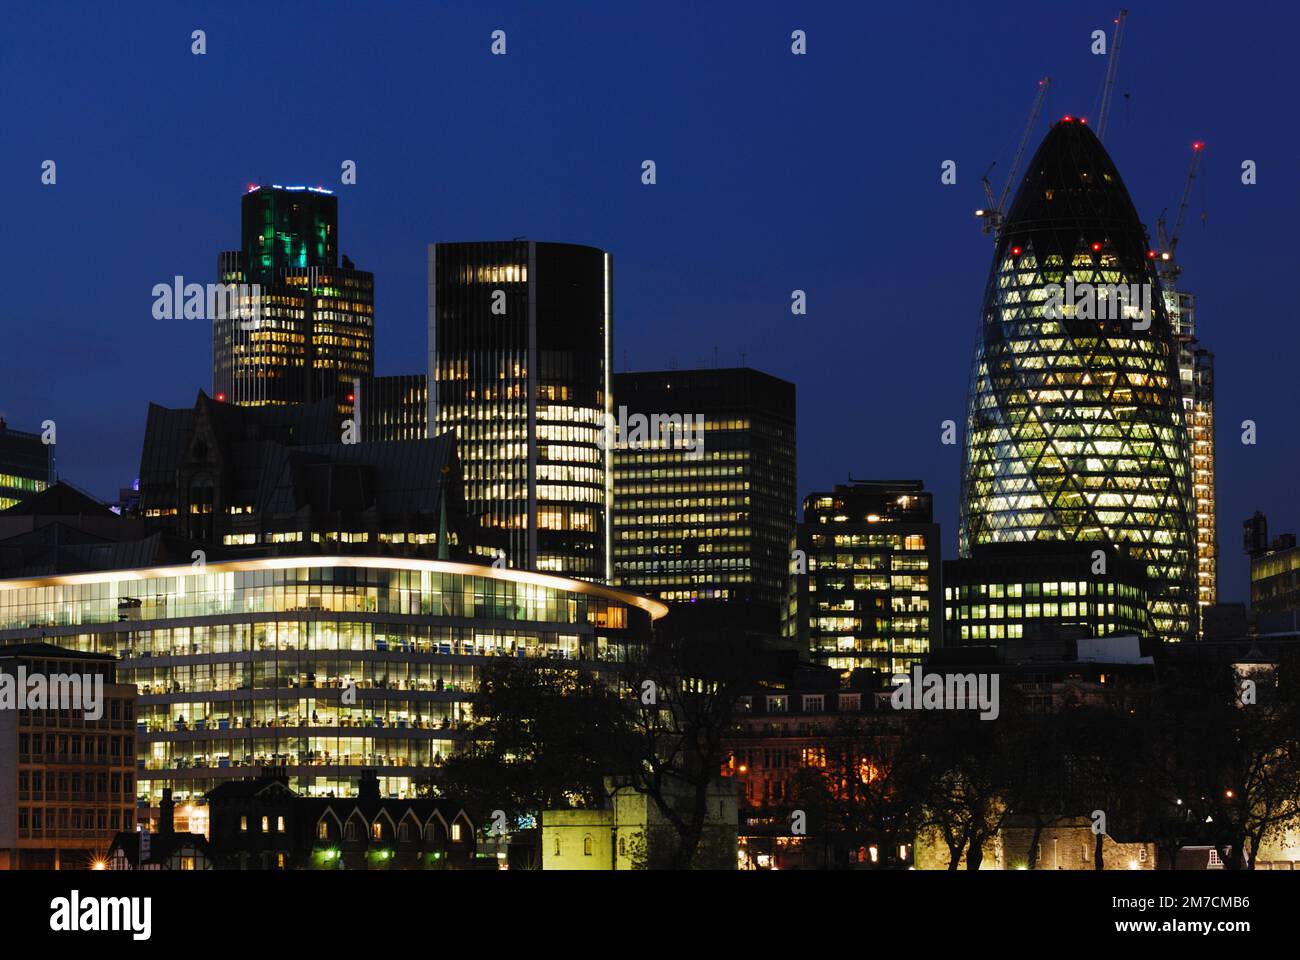 Bâtiments de la ville de Londres au crépuscule, Londres Royaume-Uni, y compris le Gherkin et la tour NatWest, vue de la rive sud Banque D'Images